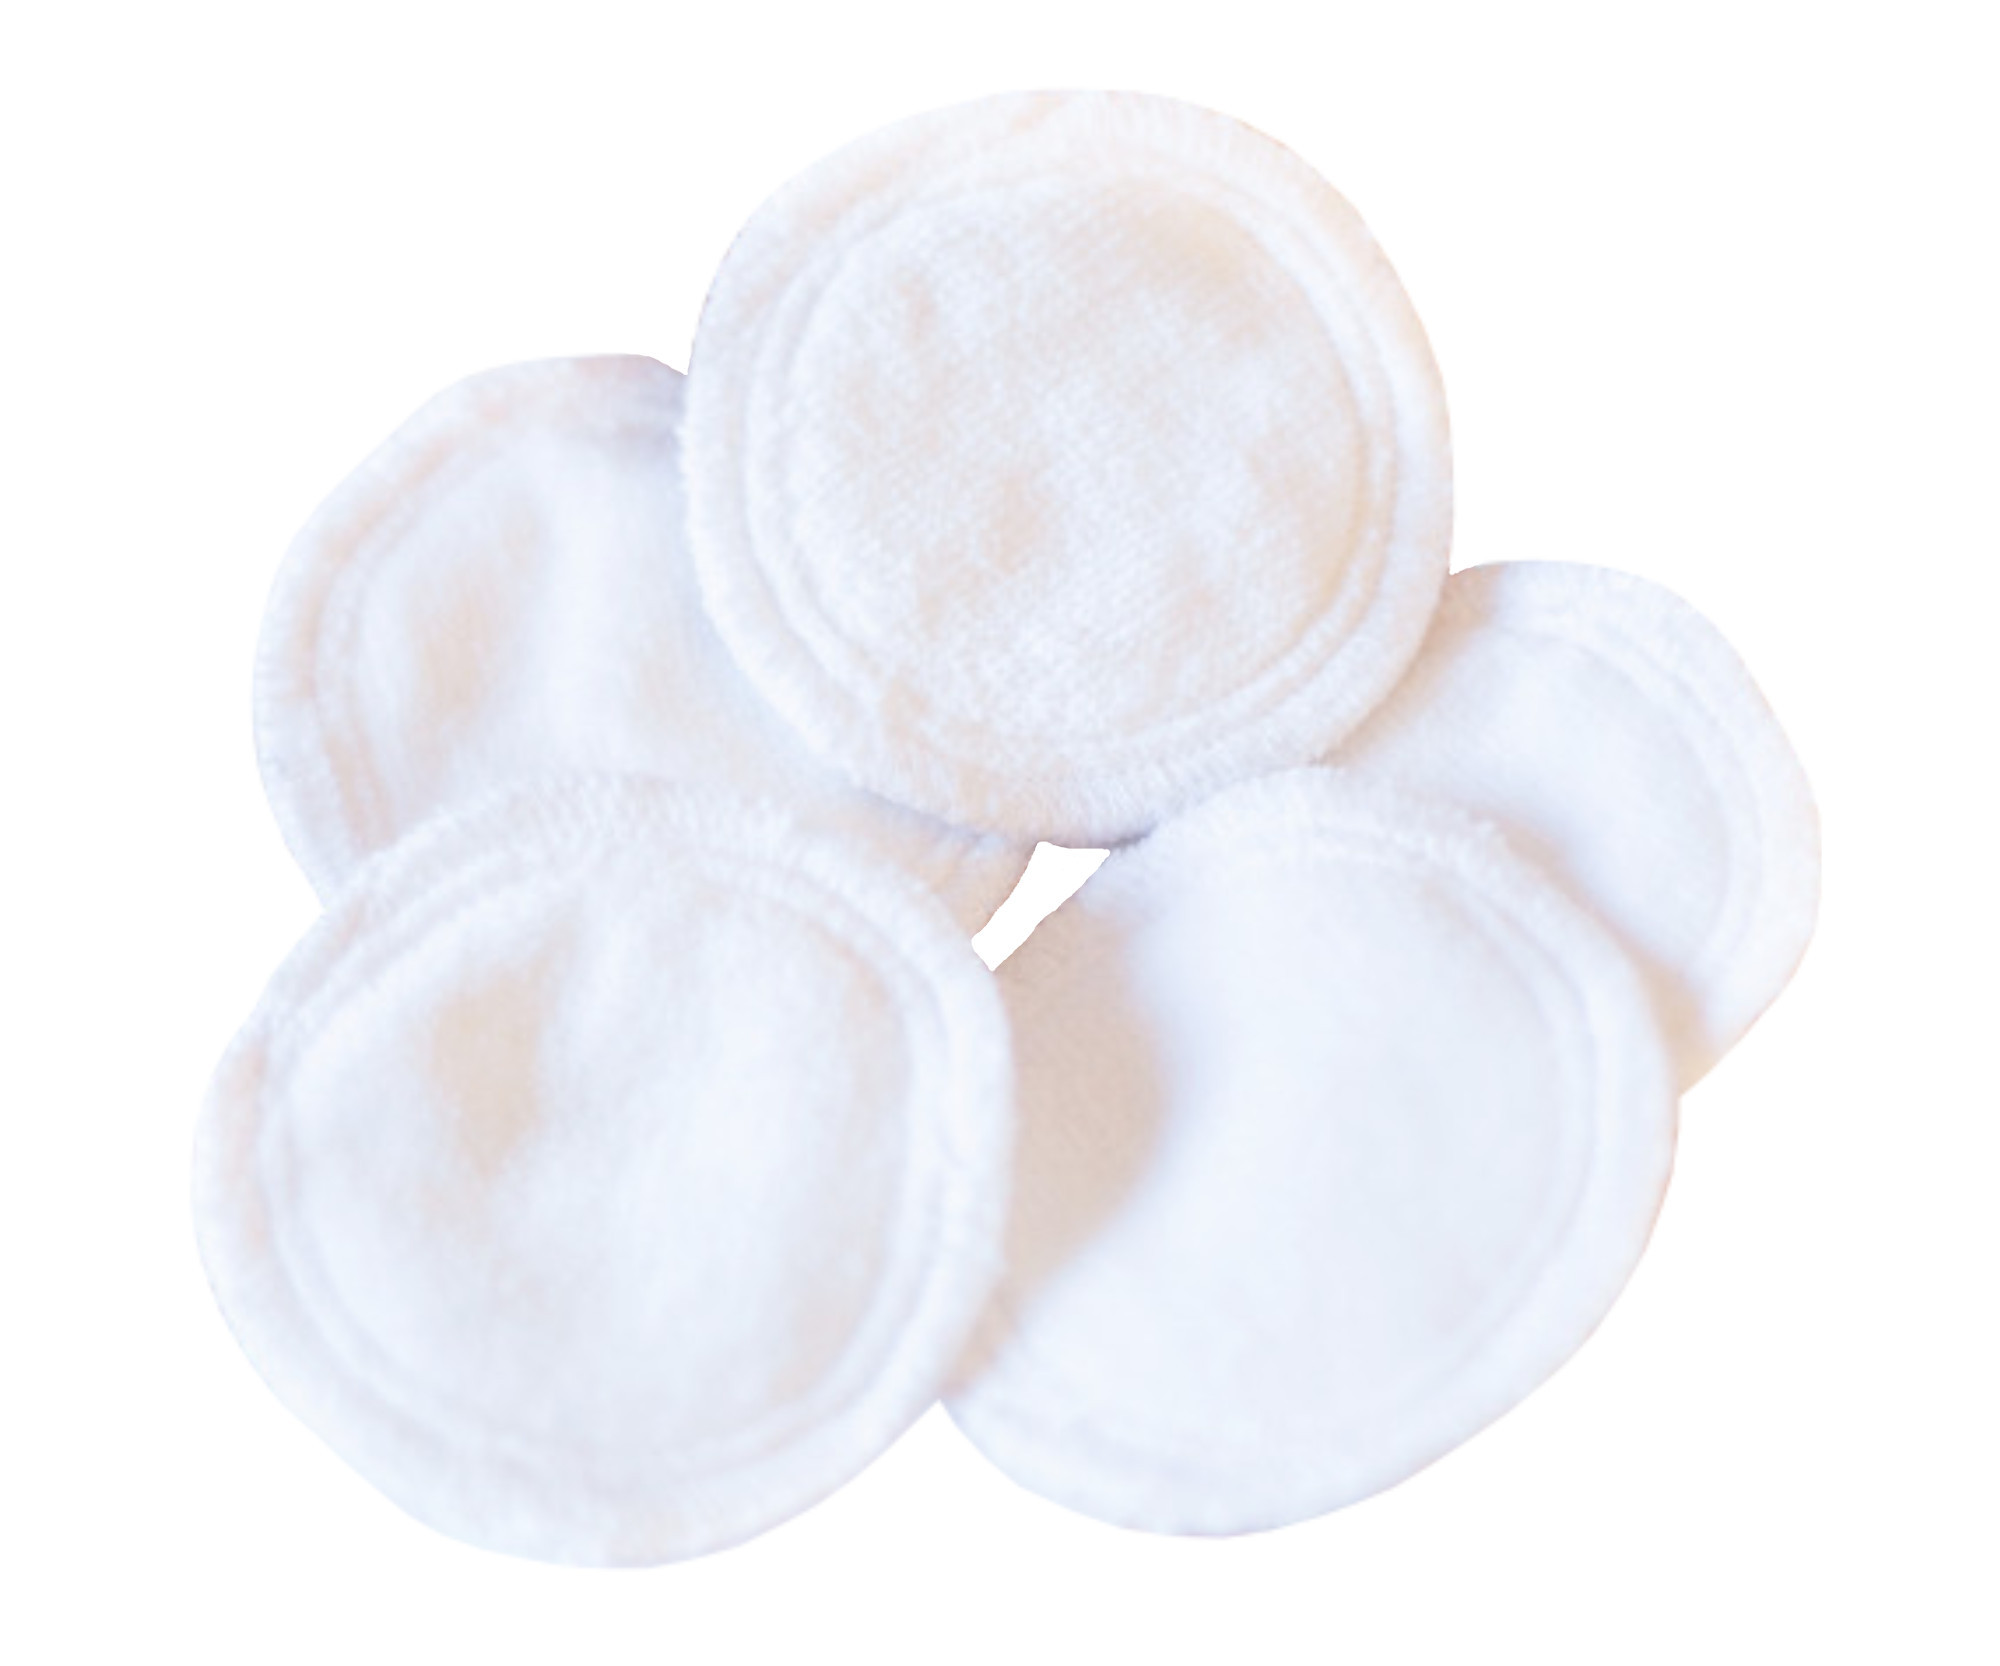 Pratelné odličovací tamponky MaryBerry Baby Face - bílé - 5 ks (10210V00K5) + dárek zdarma